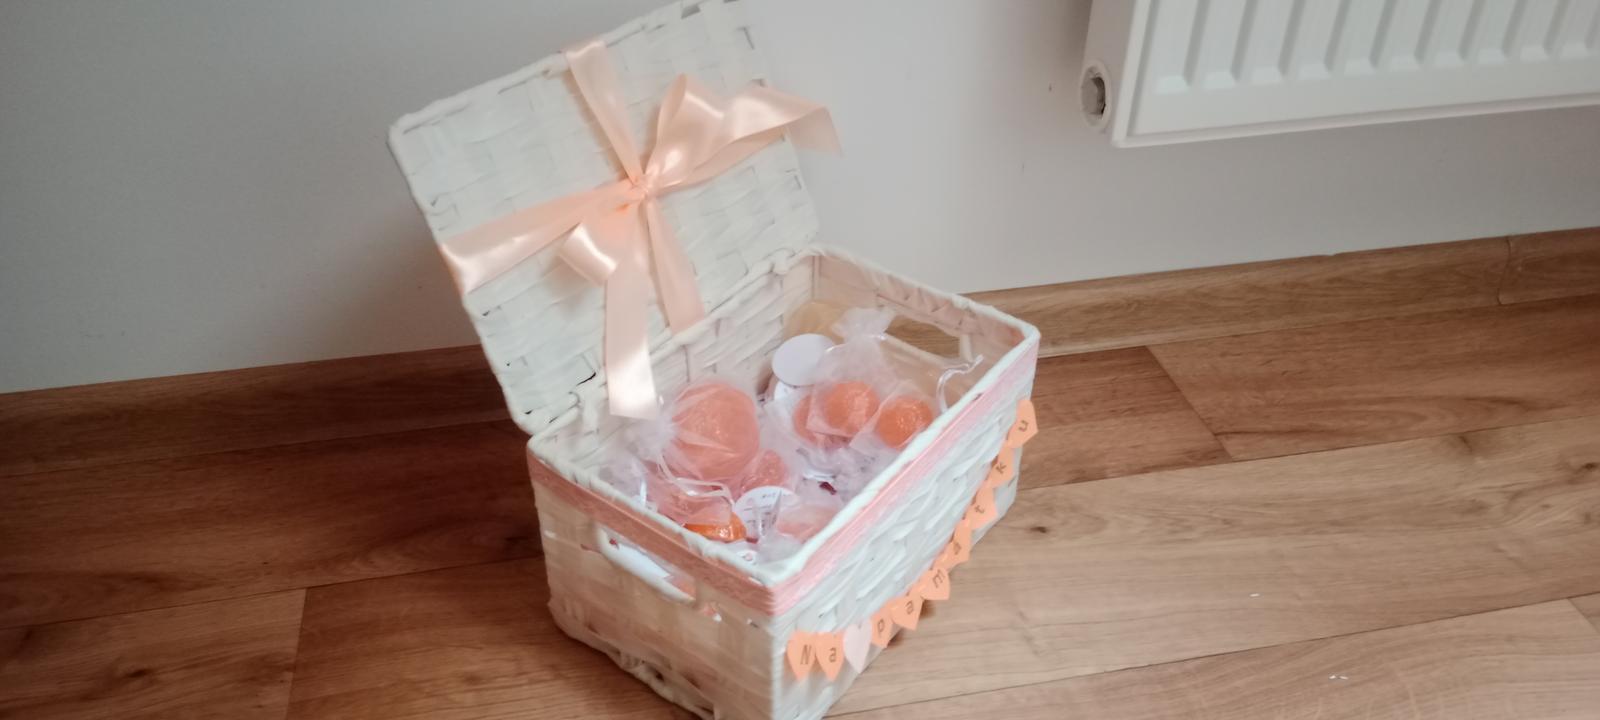 Mini mýdla jako dárky pro hosty v ozdobené krabici - Obrázek č. 1